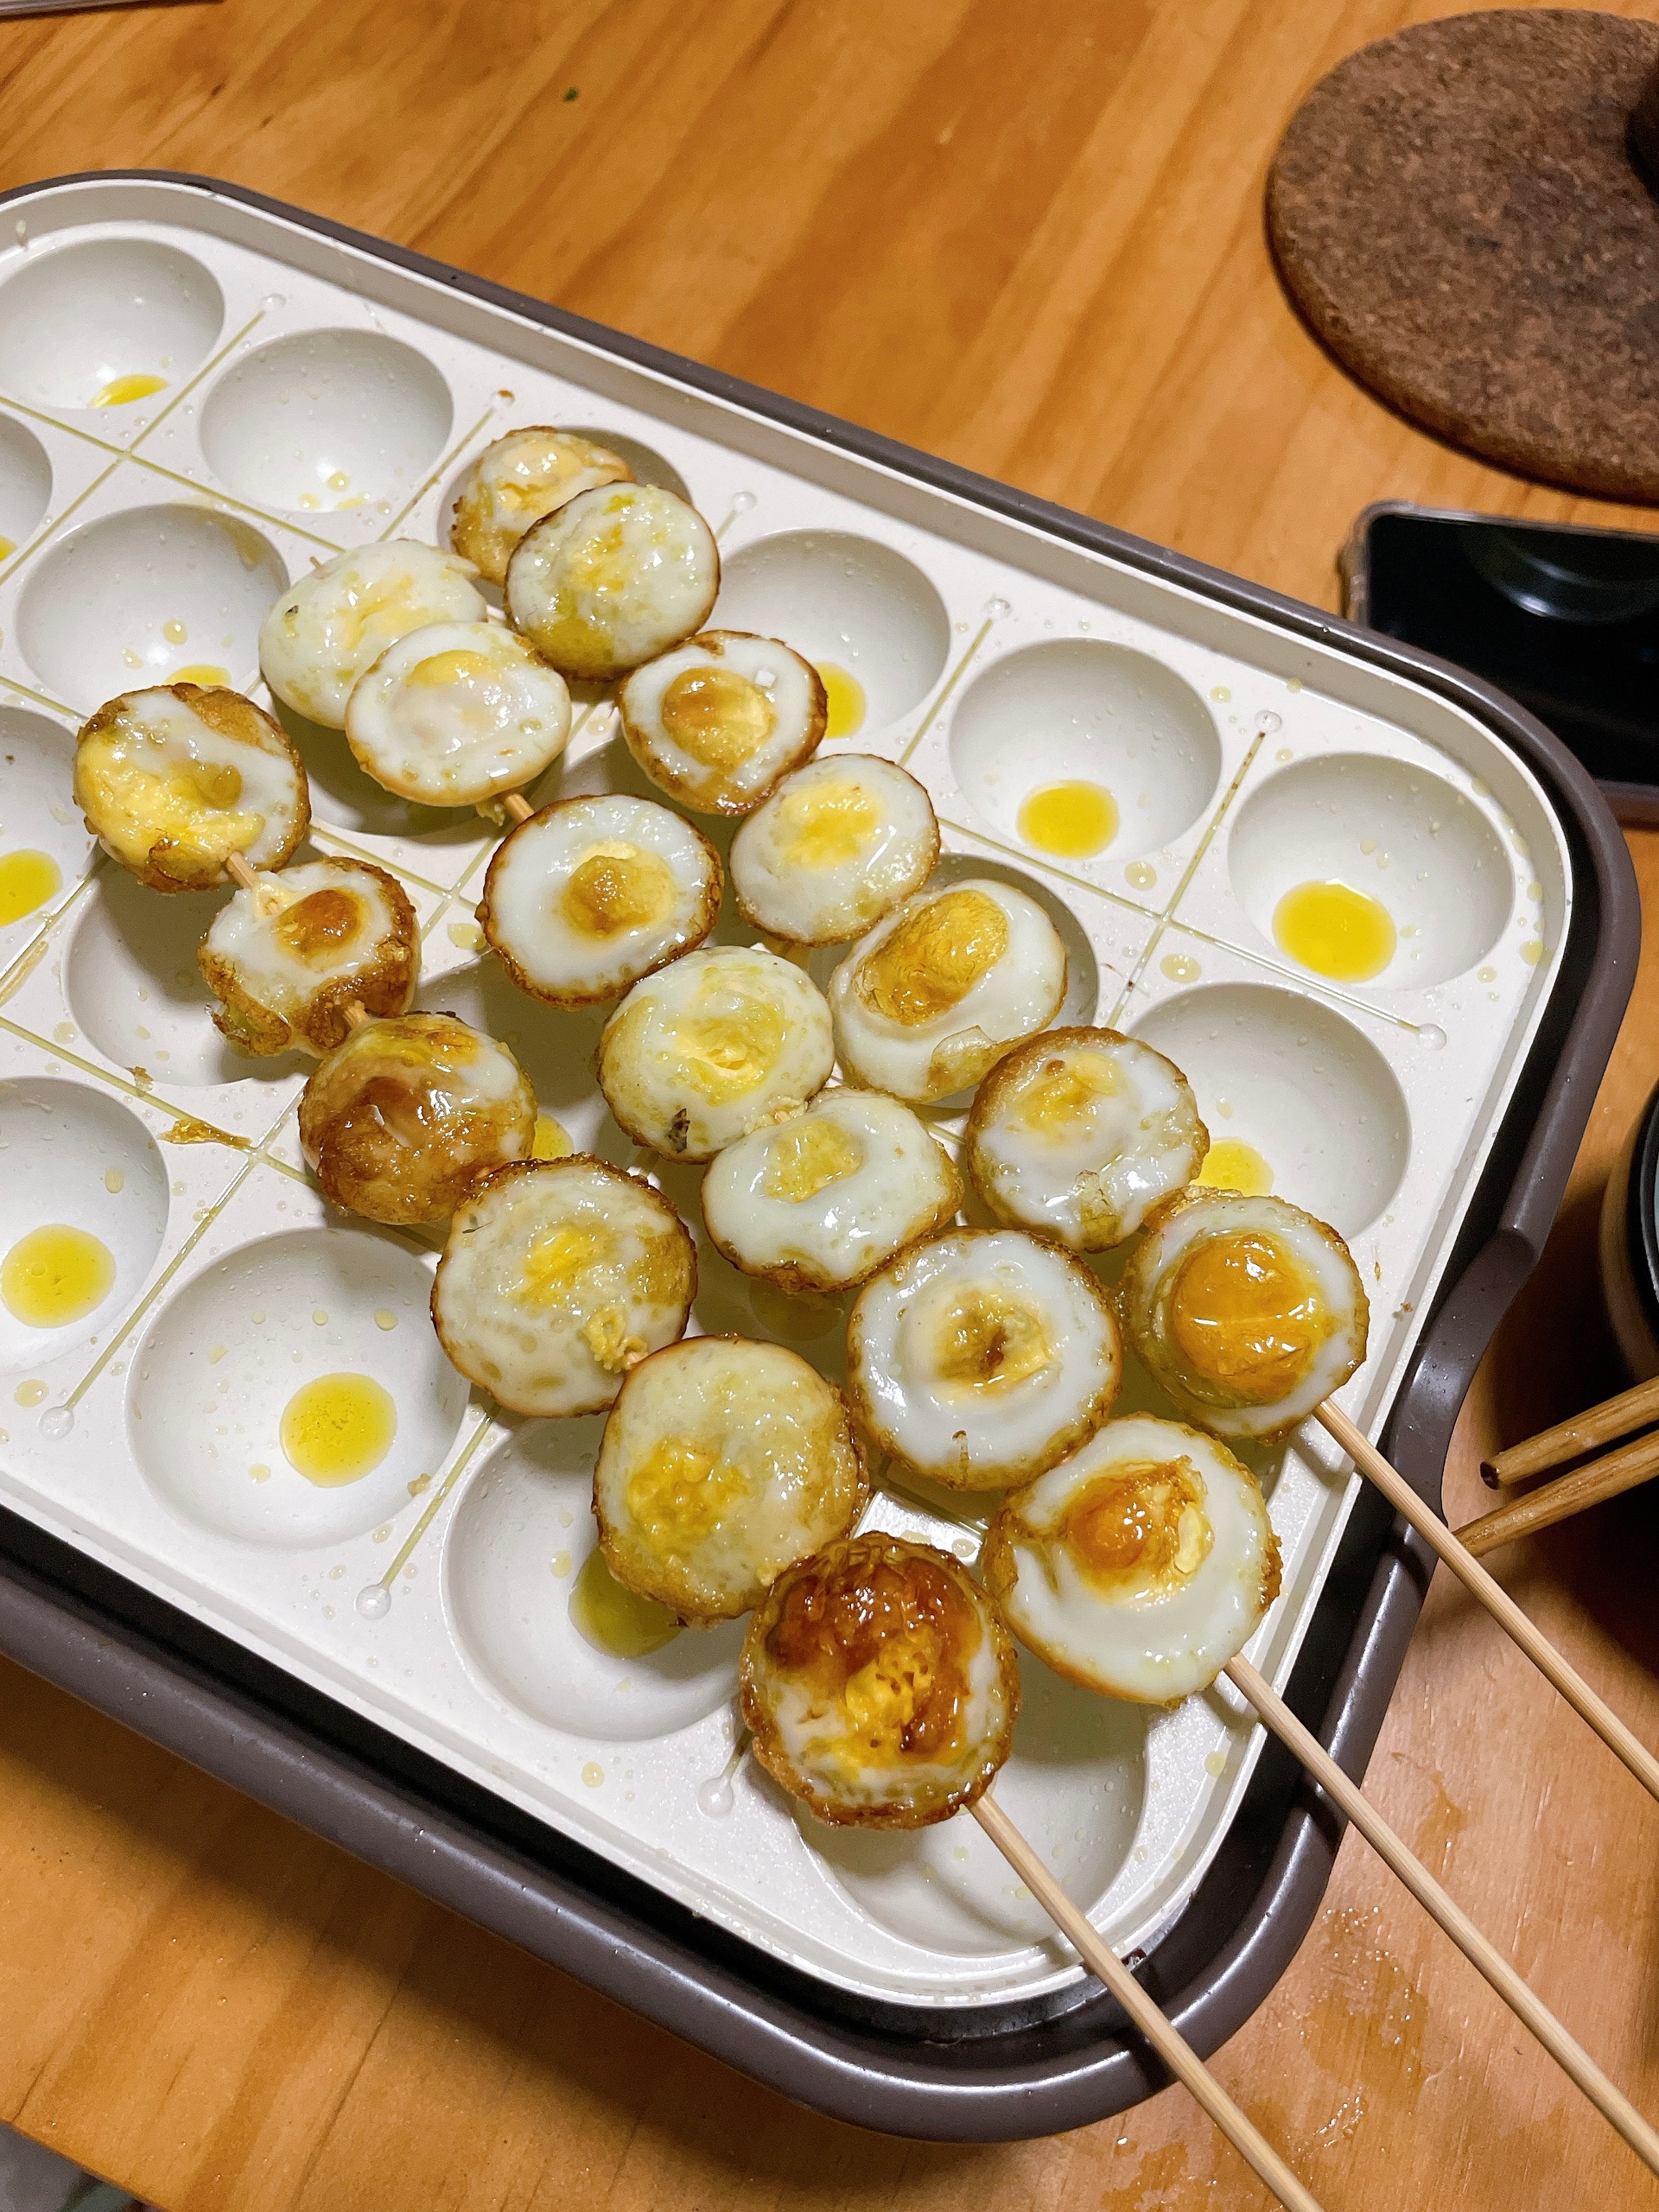 烤鹌鹑蛋——章鱼小丸子模具